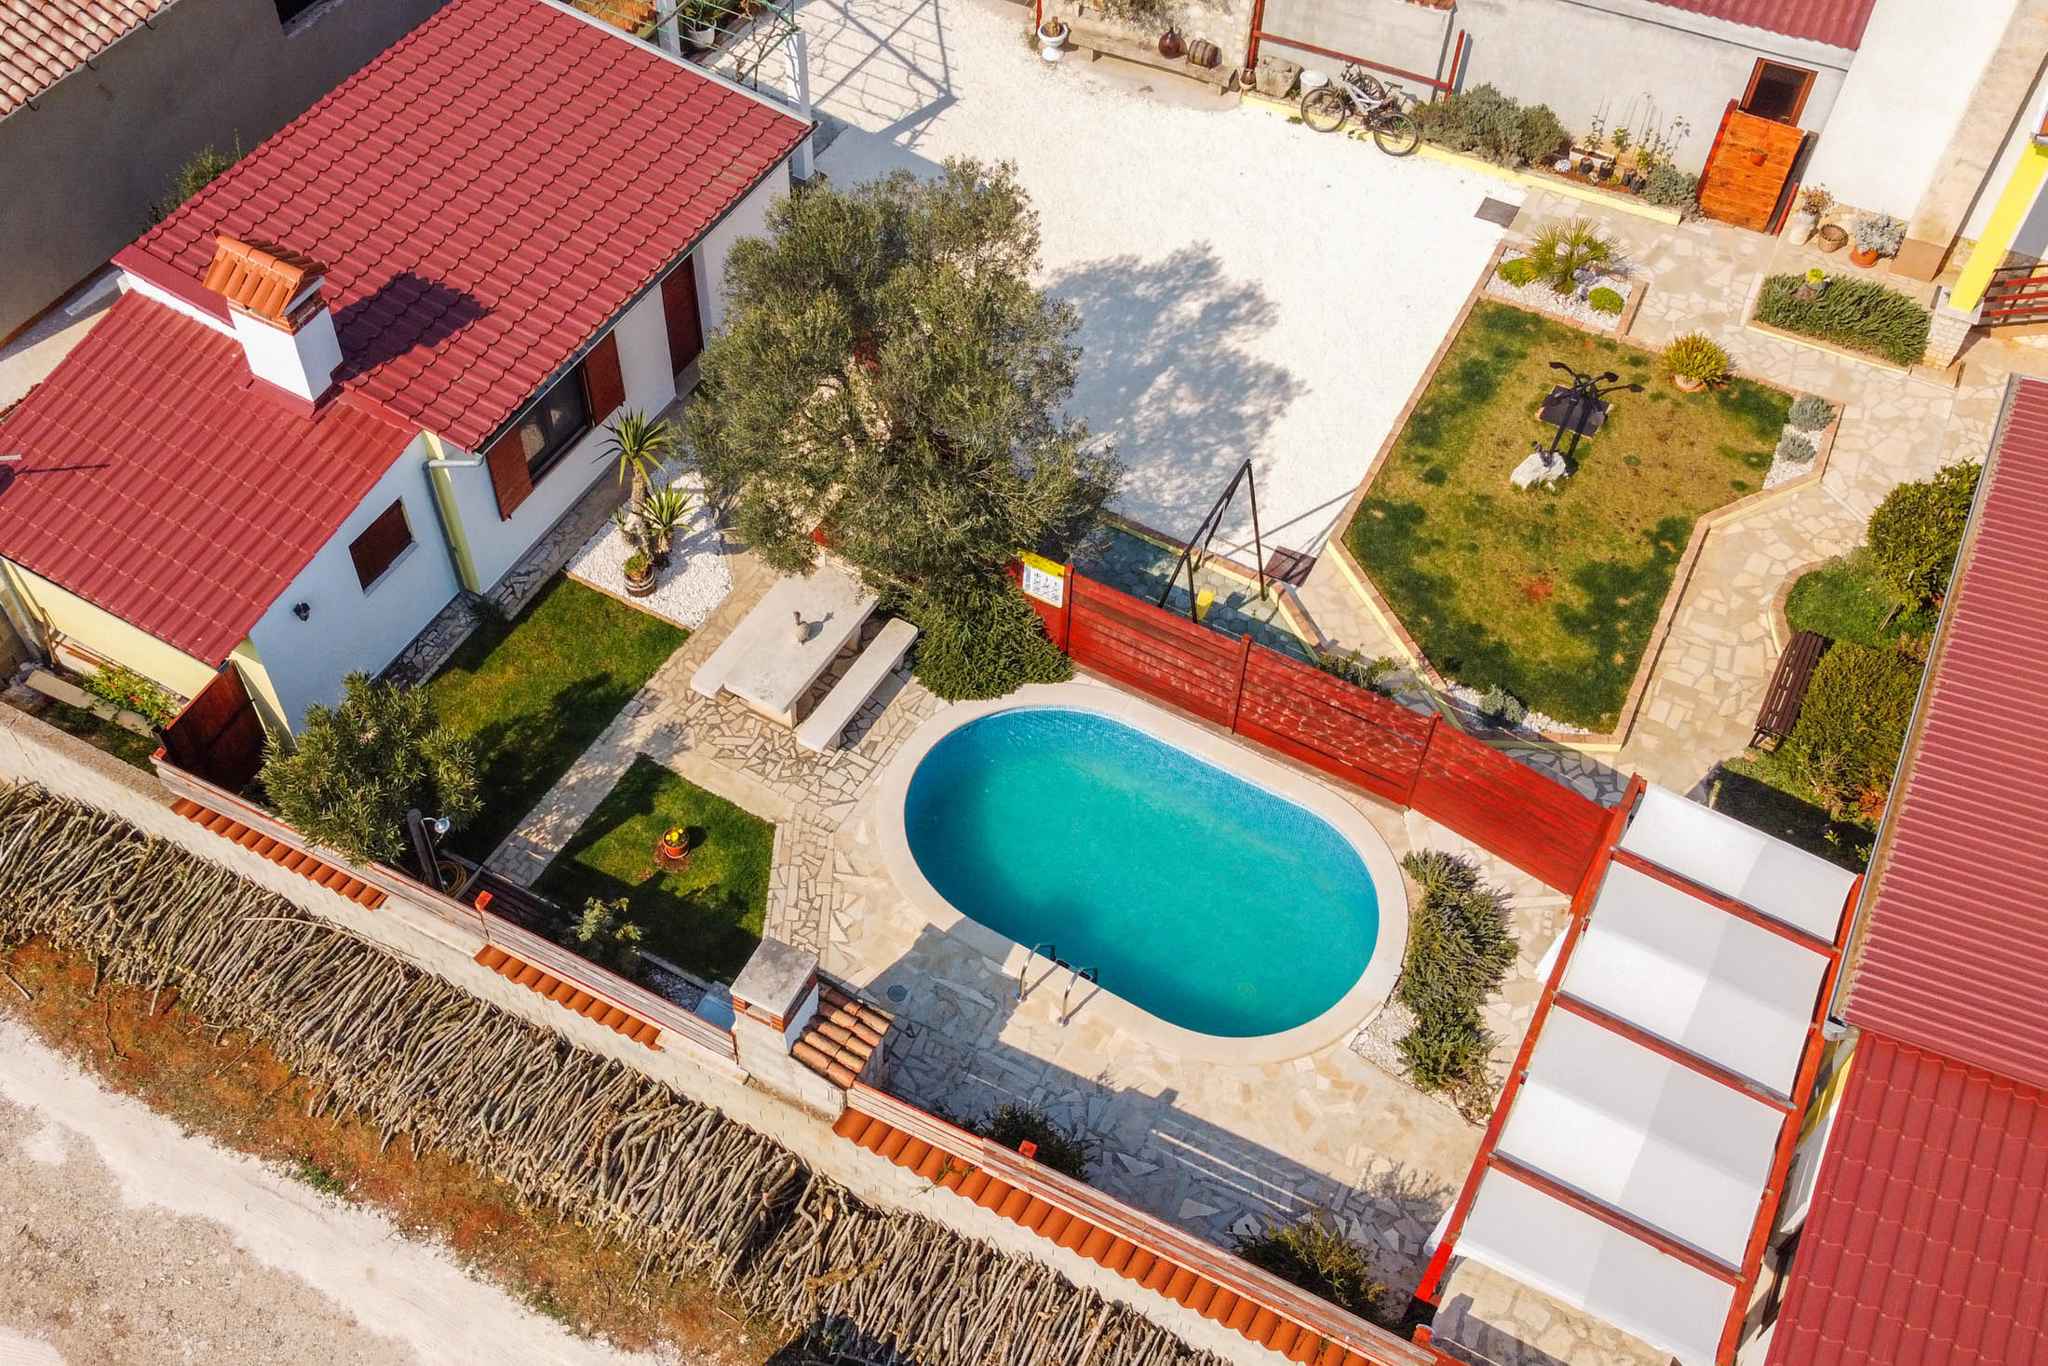 Bungalow mit Pool und Garten Ferienhaus in Kroatien